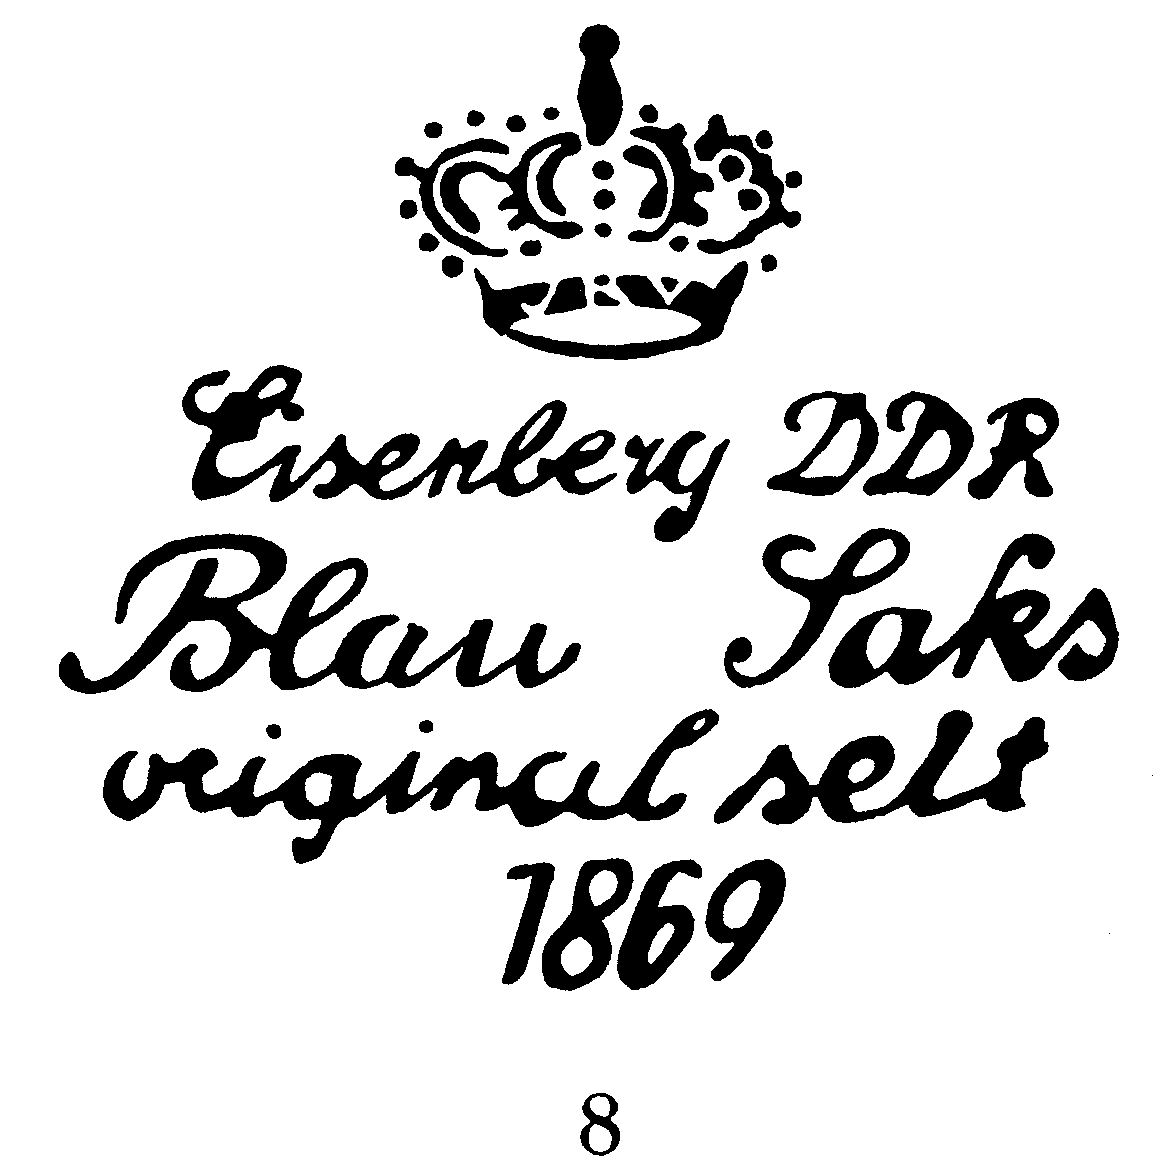 Krone Eisenberg DDR 'Blau Saks' original seit 1869